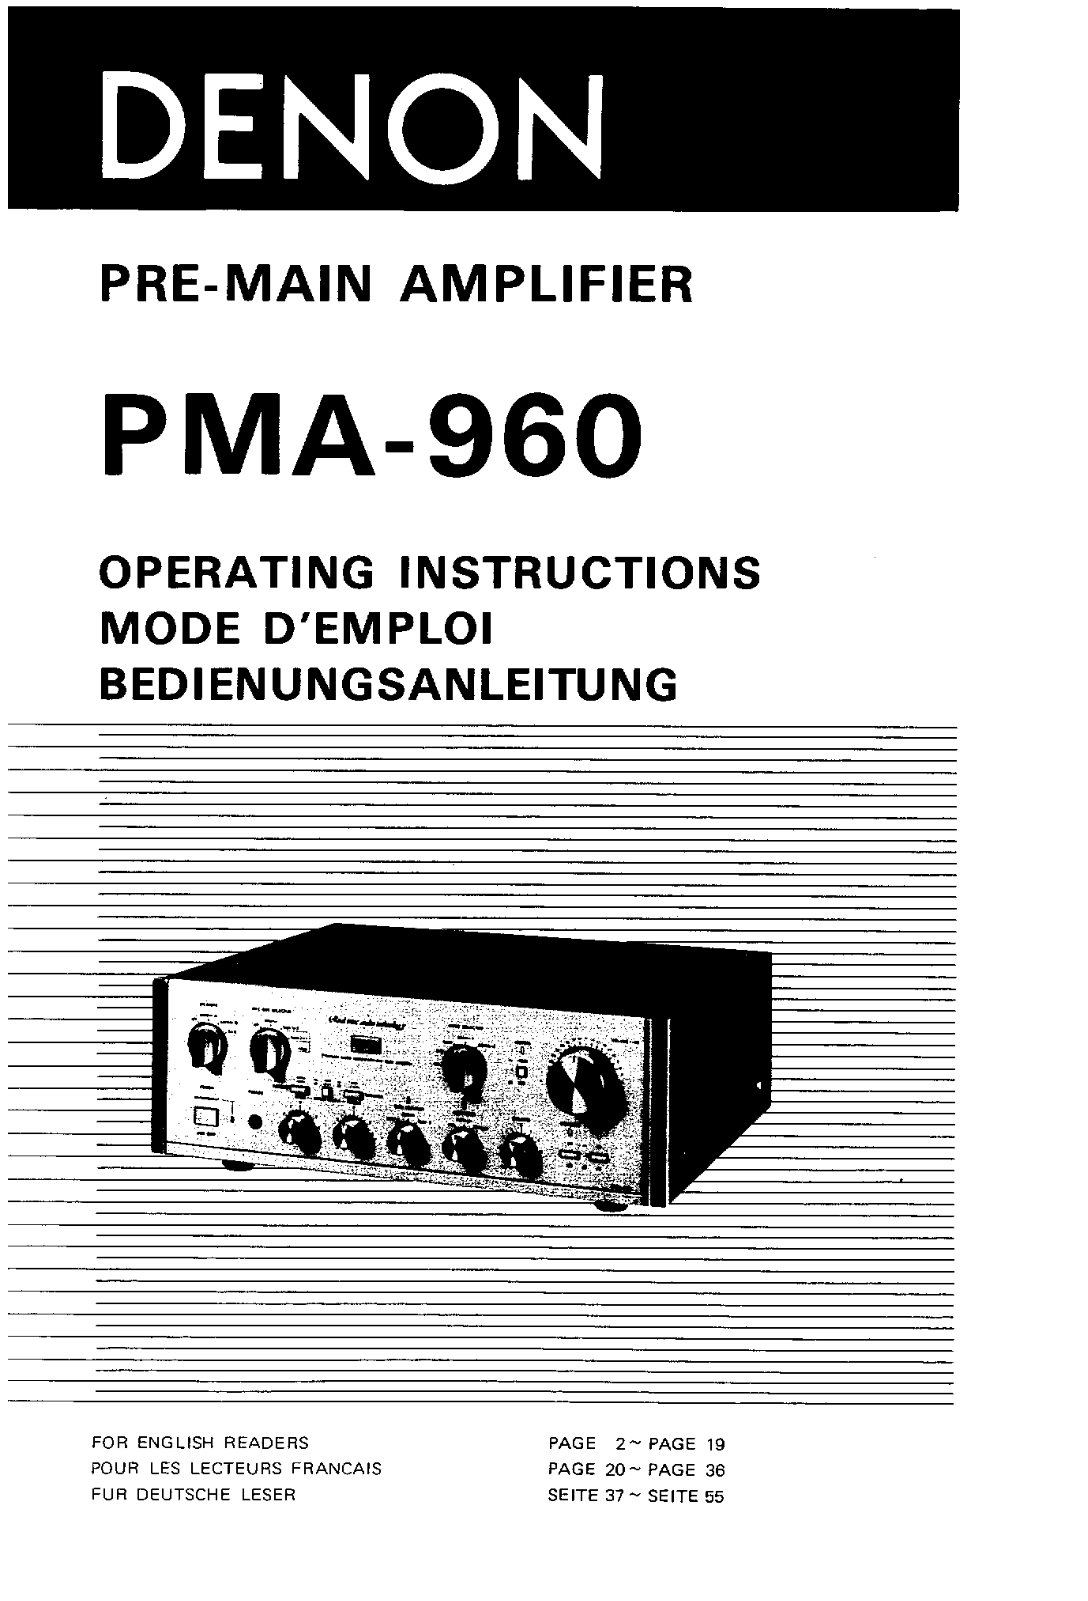 Denon PMA-960 Owner's Manual